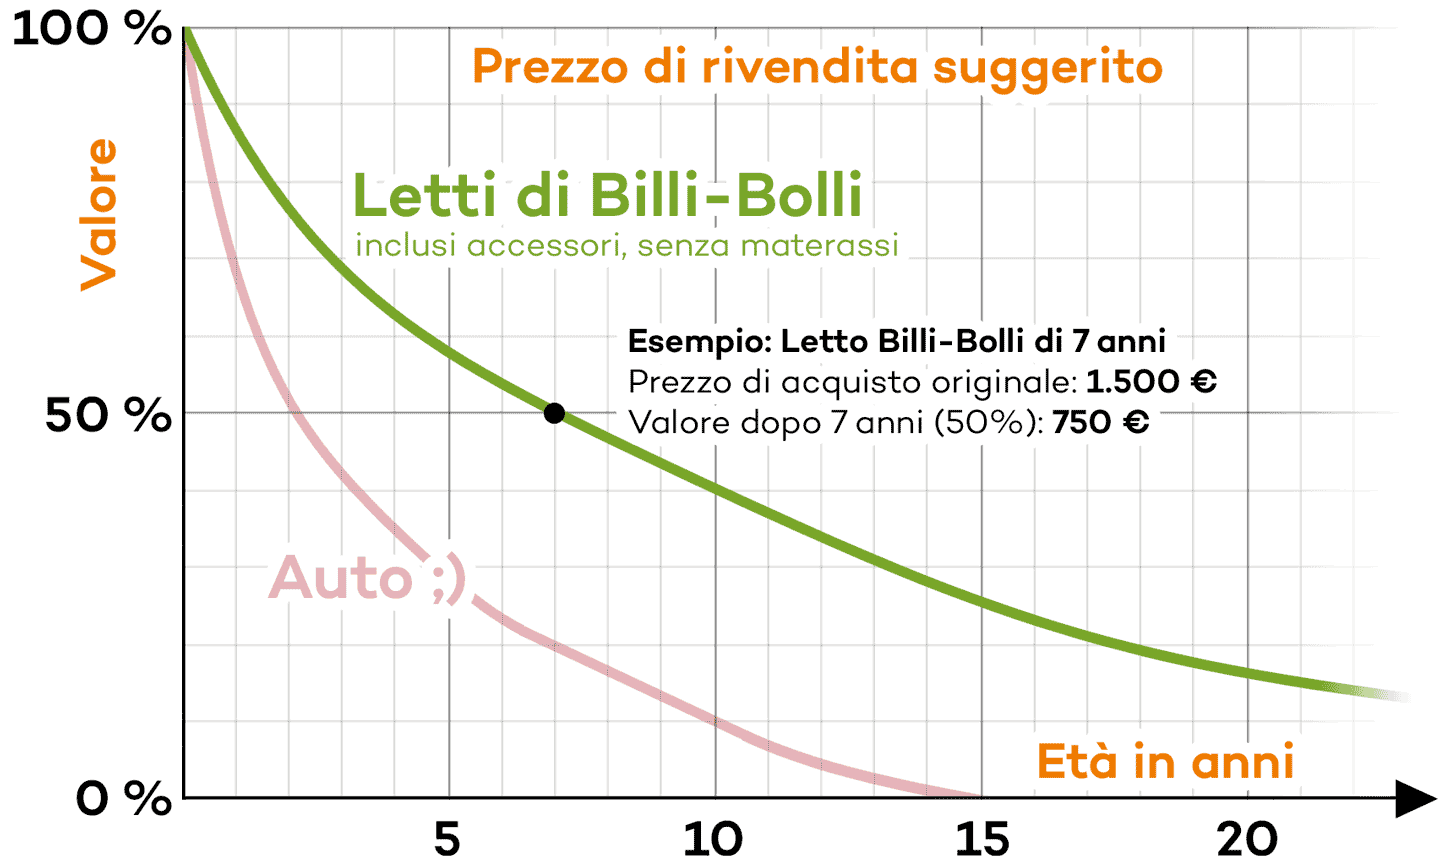 Prezzo di rivendita suggerito per letti Billi-Bolli